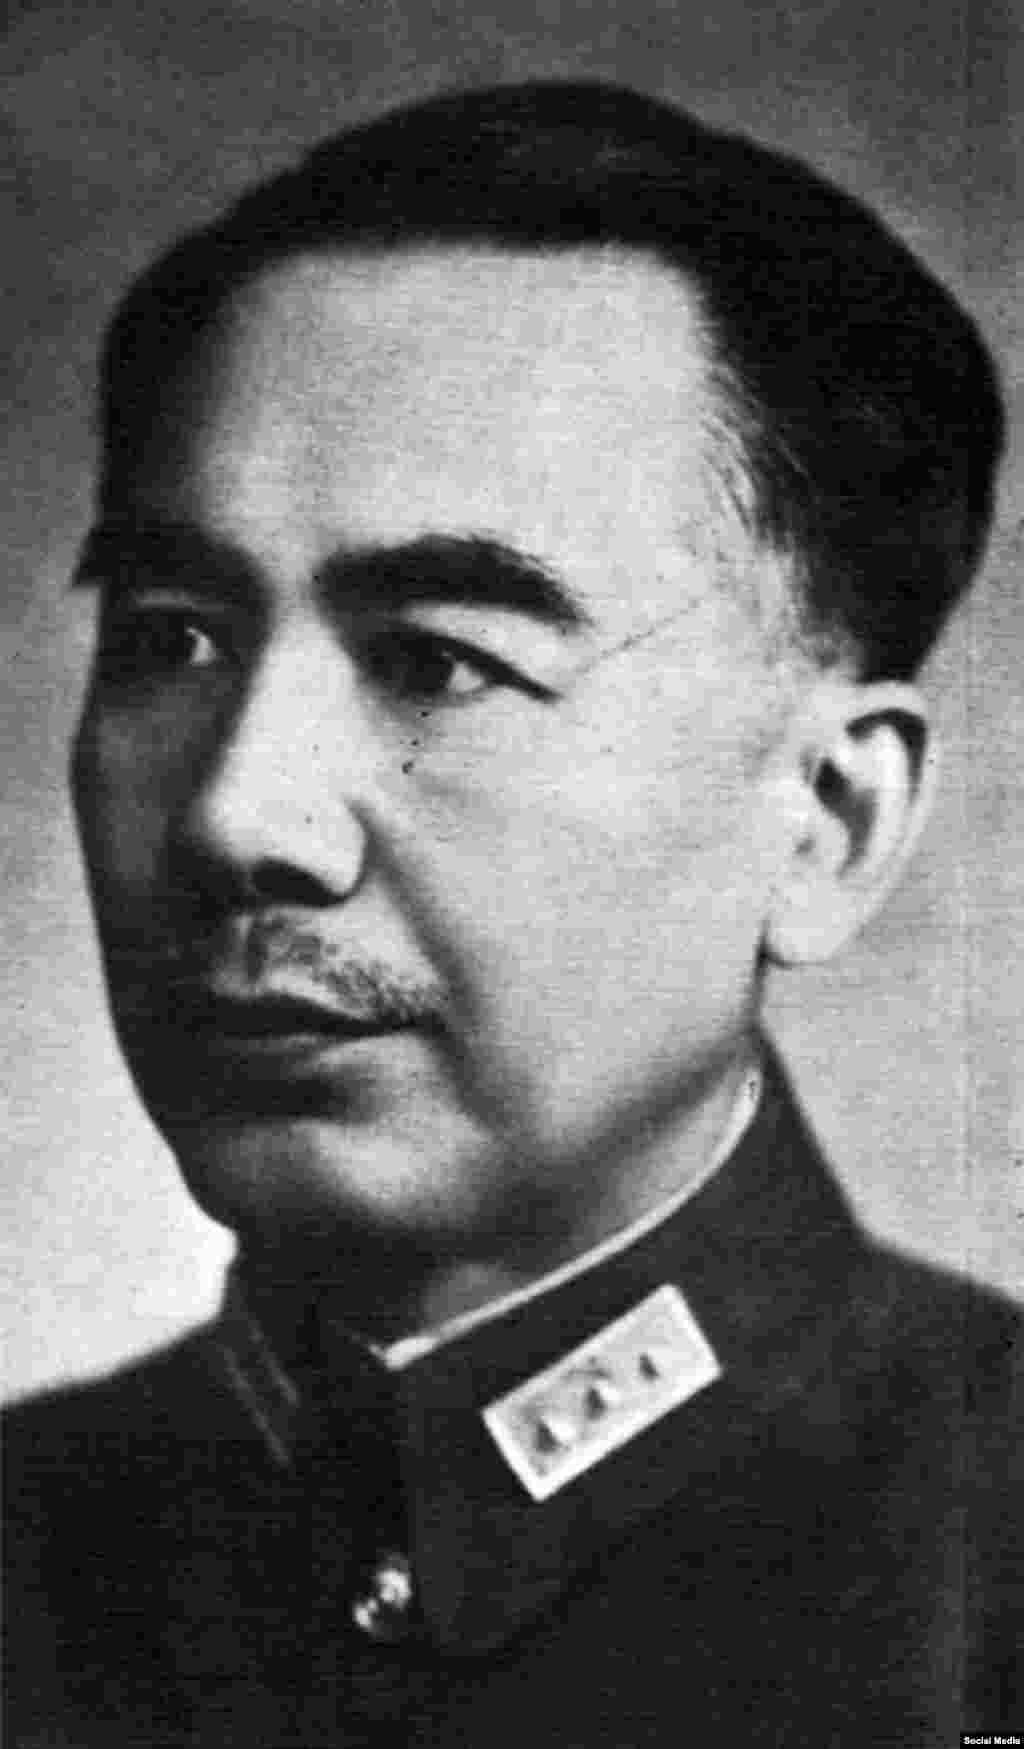 Үрүмчүнүн акими (дубан), теги кытайлык Шэн Шицай. 1933-41-жж. Иосиф Сталин анын бийлигин чыңдап берген.&nbsp;